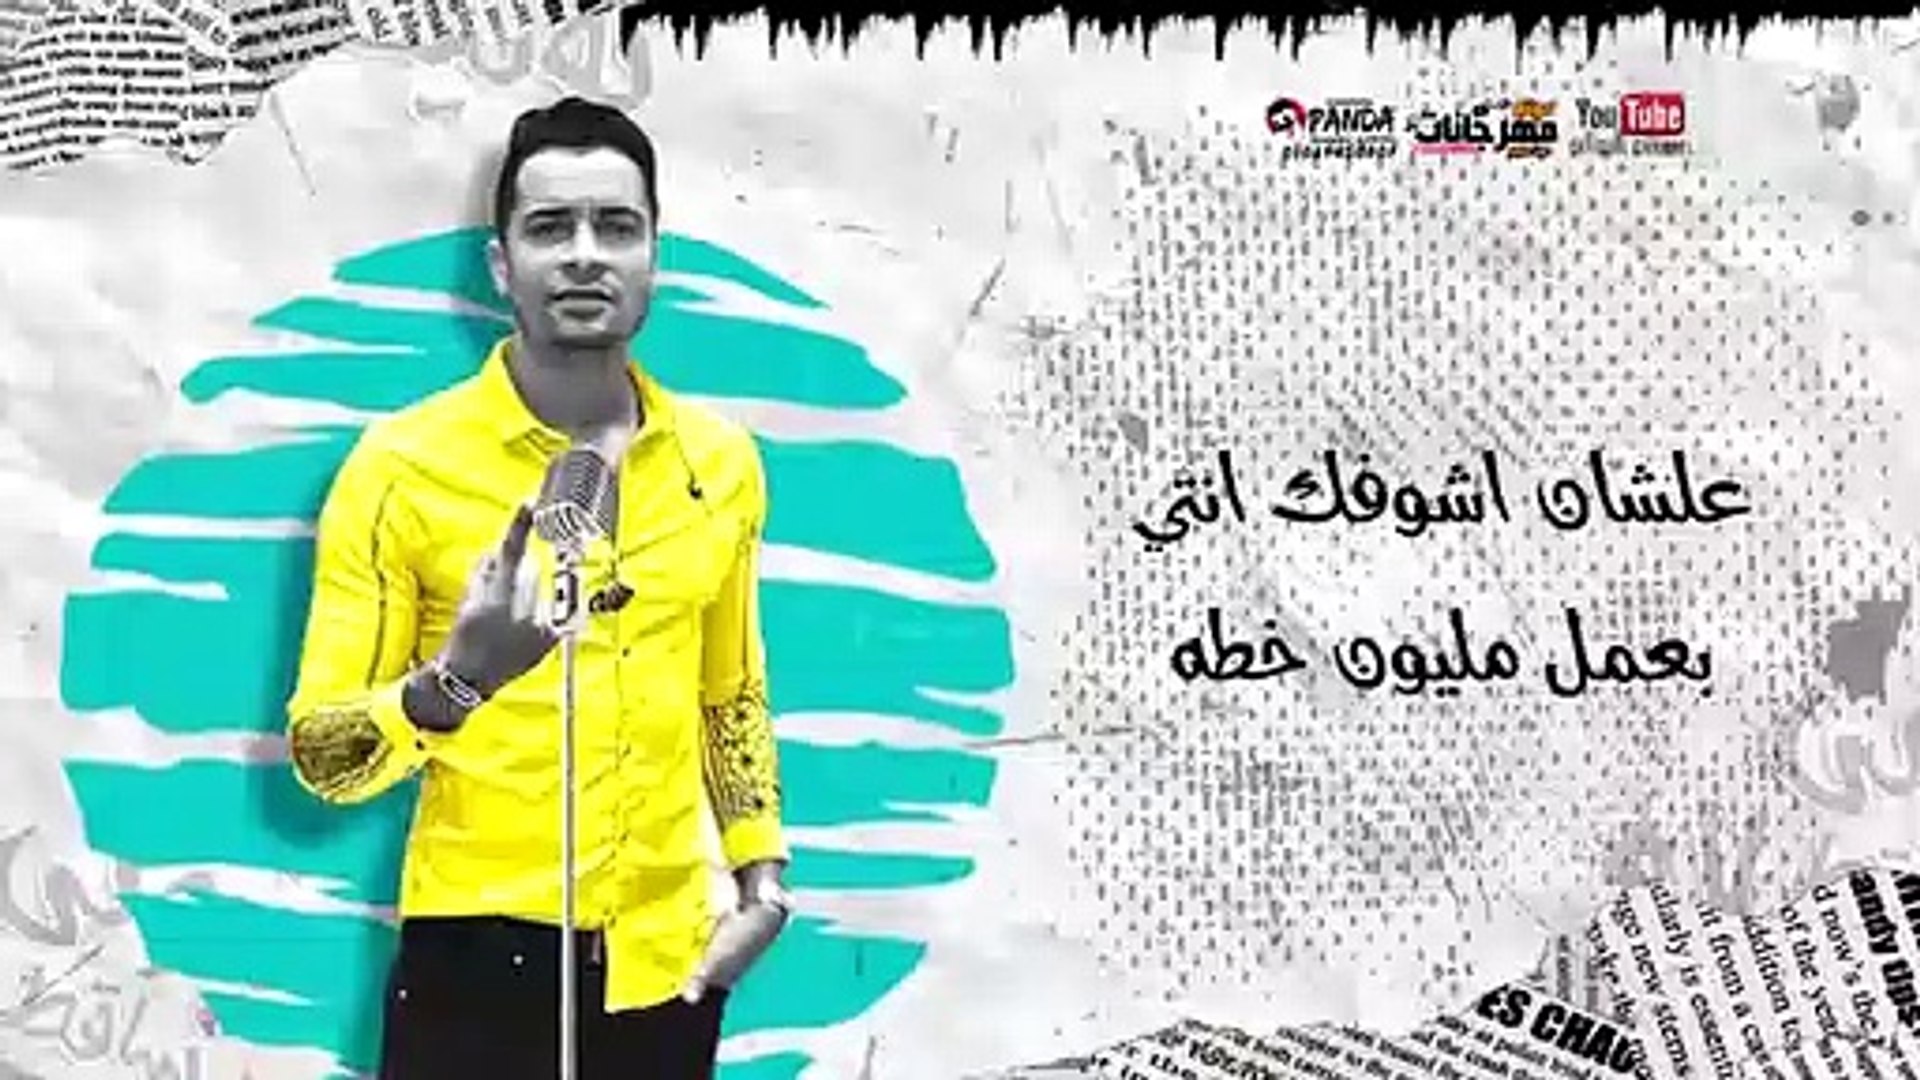 مهرجان عود البطل حسن شاكوش و عمر كمال - توزيع اسلام ساسو 2020 - فيديو  Dailymotion